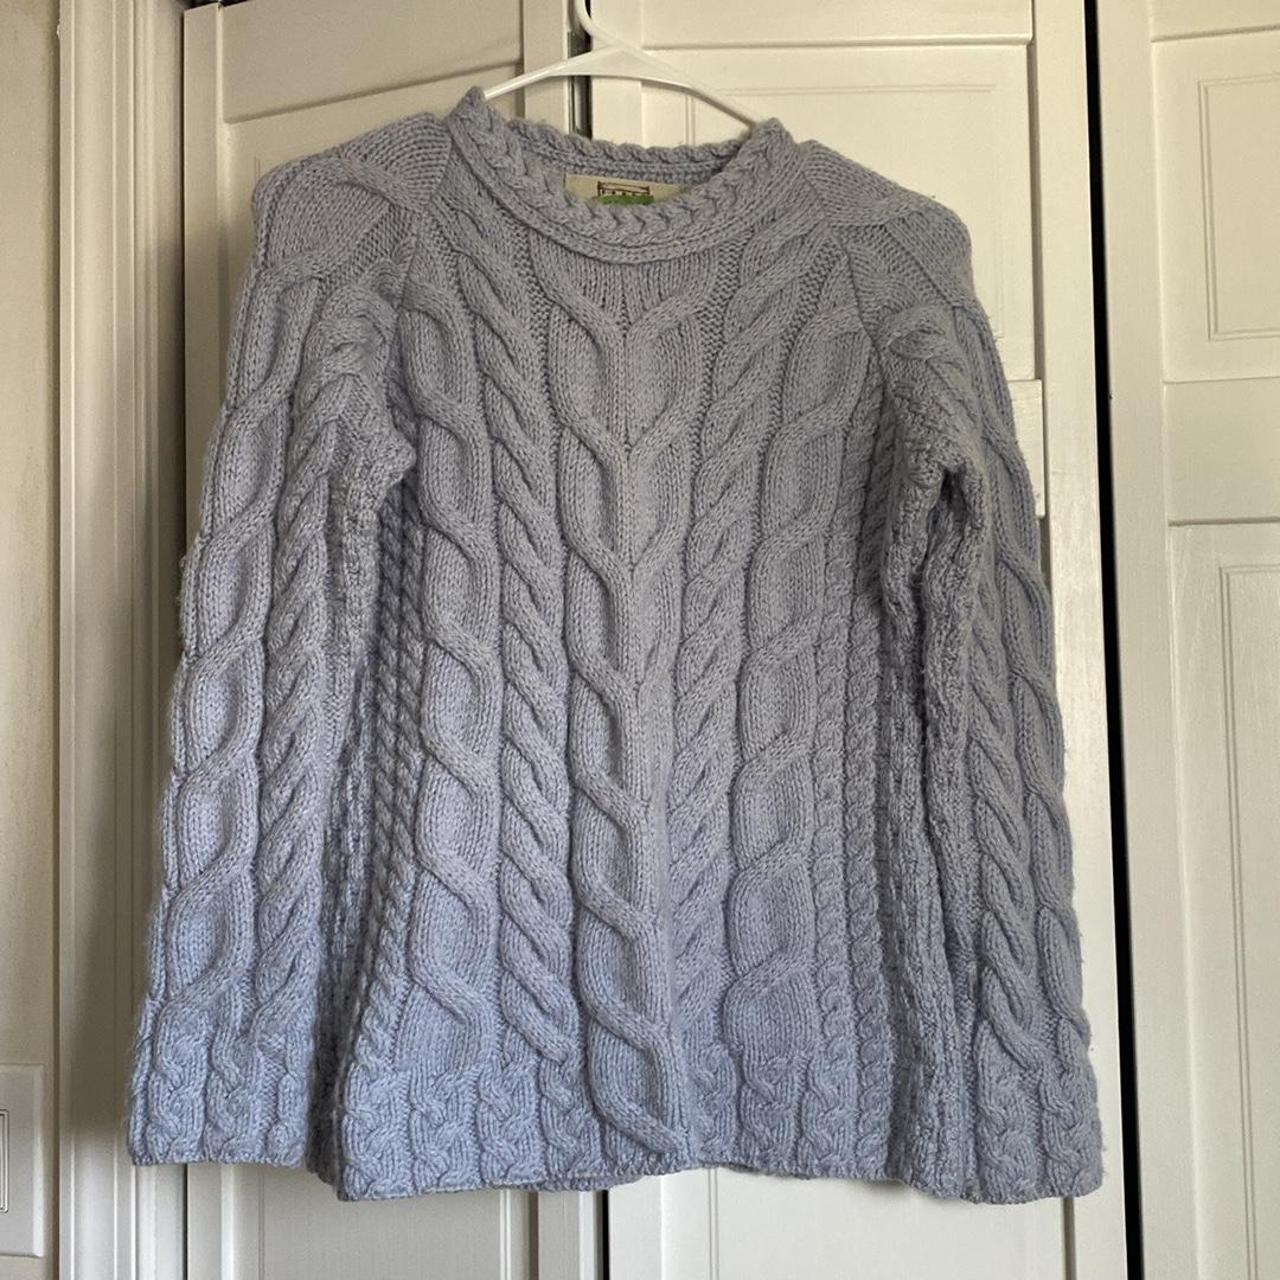 Made in Ireland Aran Sweater Market Women’s Blue... - Depop